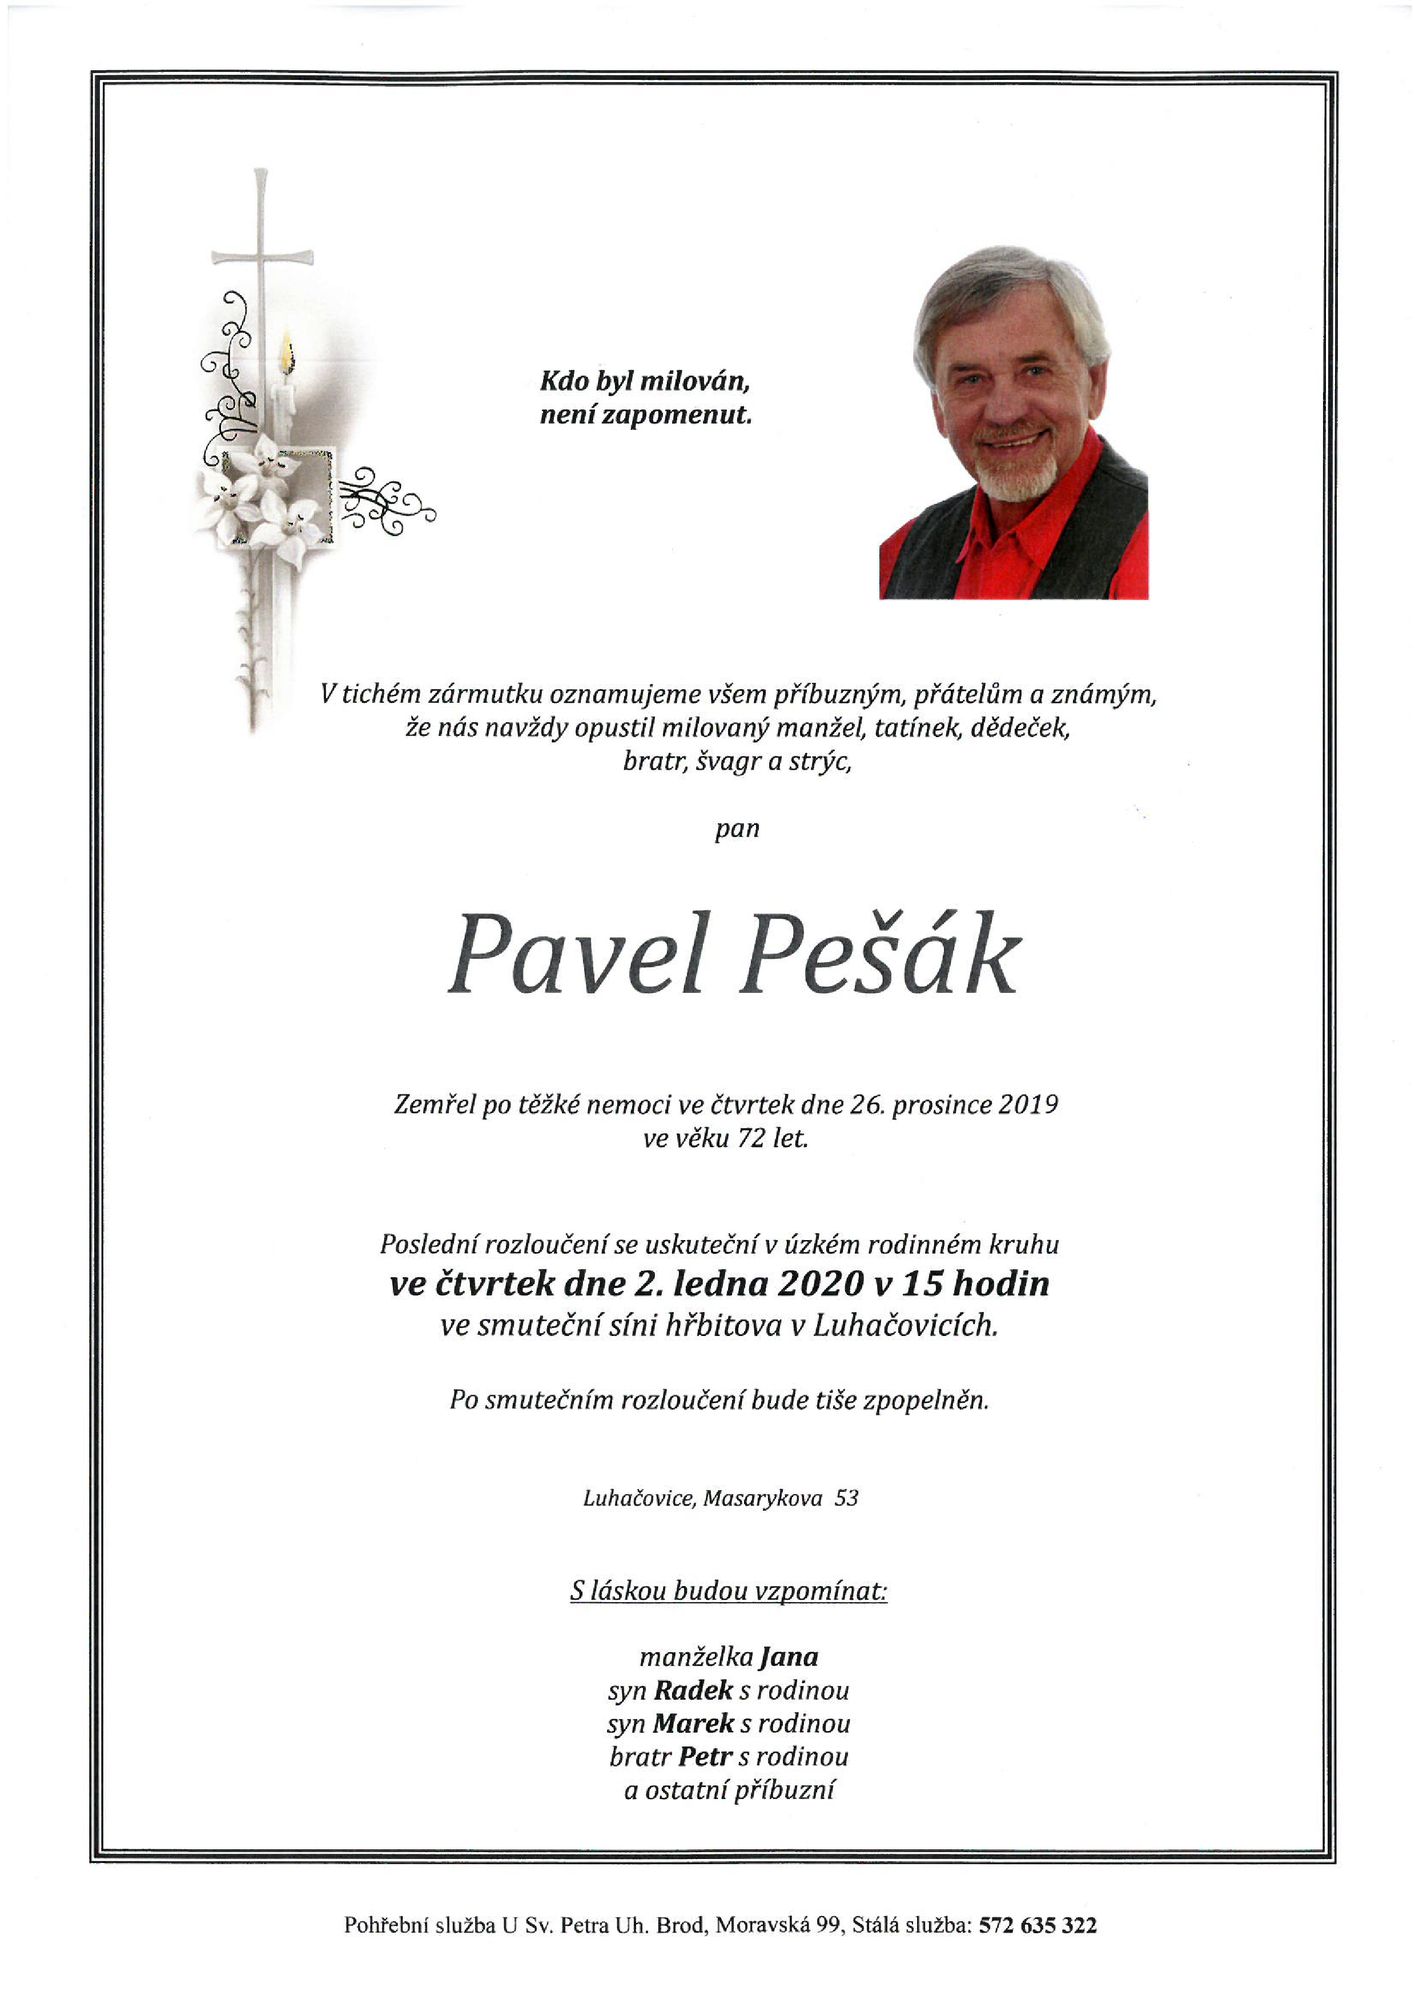 Pavel Pešák